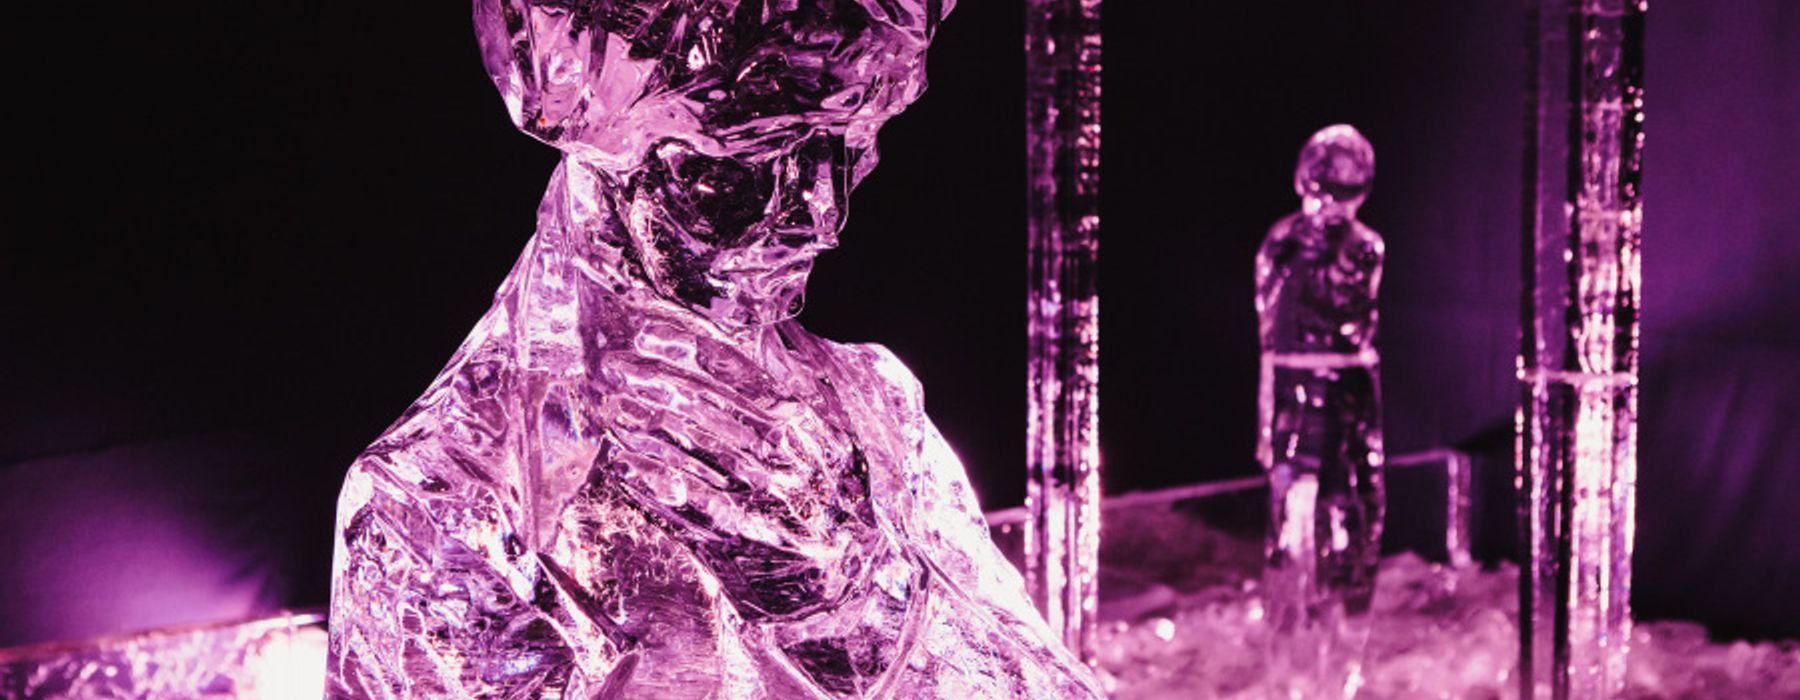 Šaltalankių degustacija - Jelgavos ledo skulptūrų festivalis – Virtieniai